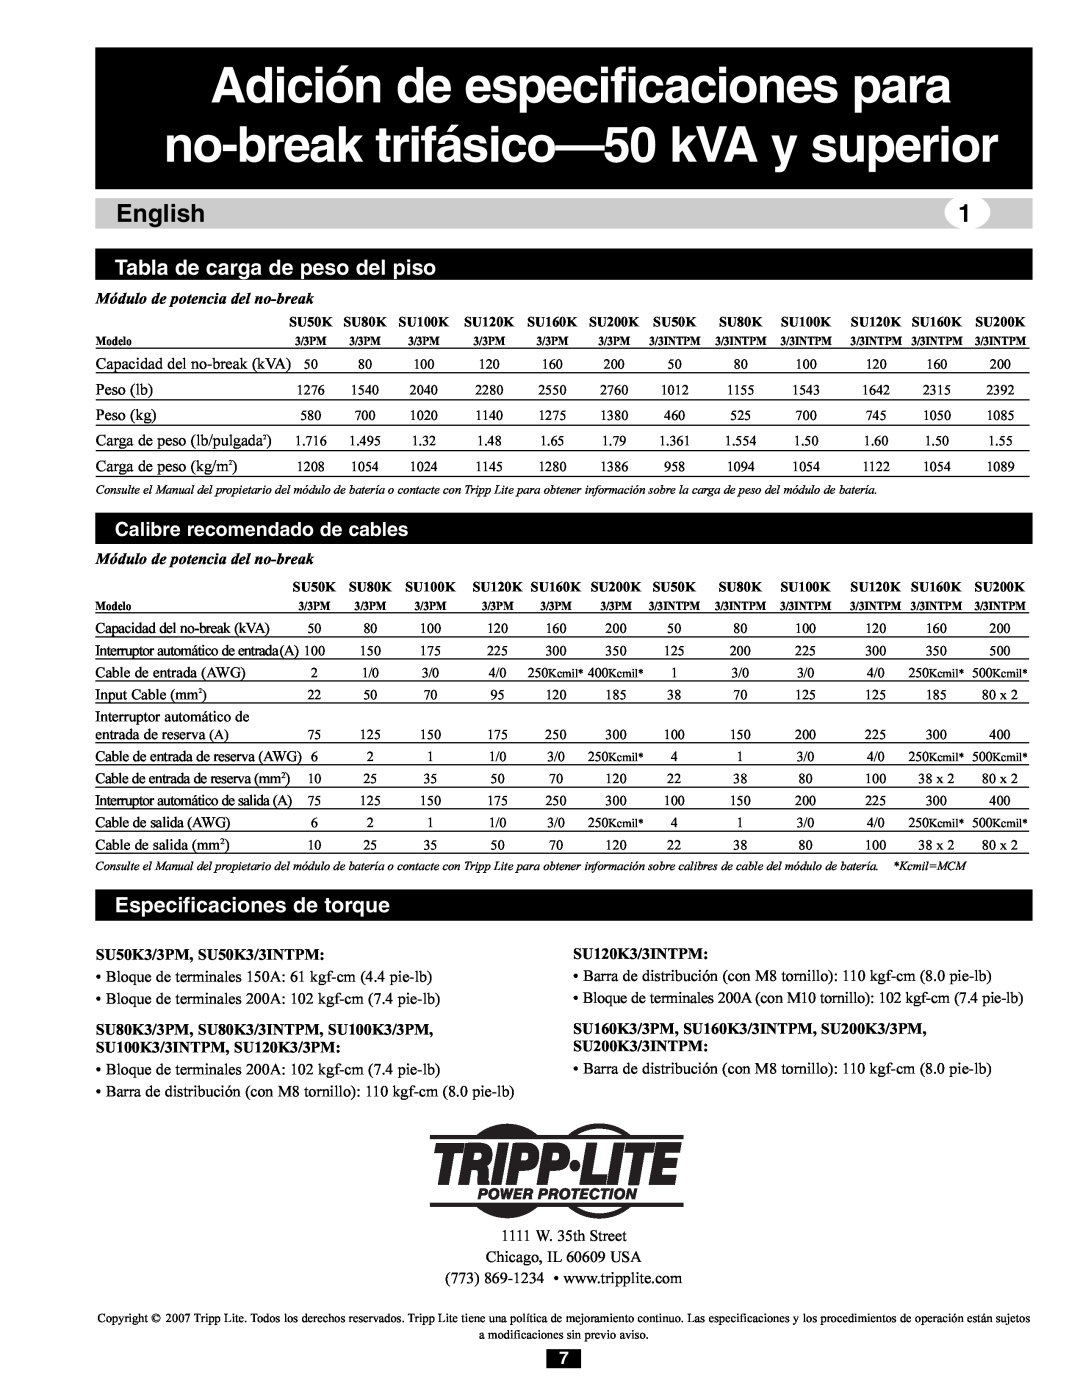 Tripp Lite 220/380V, 240/415V AC, 230/400V Adición de especificaciones para no-break trifásico-50 kVA y superior, English 